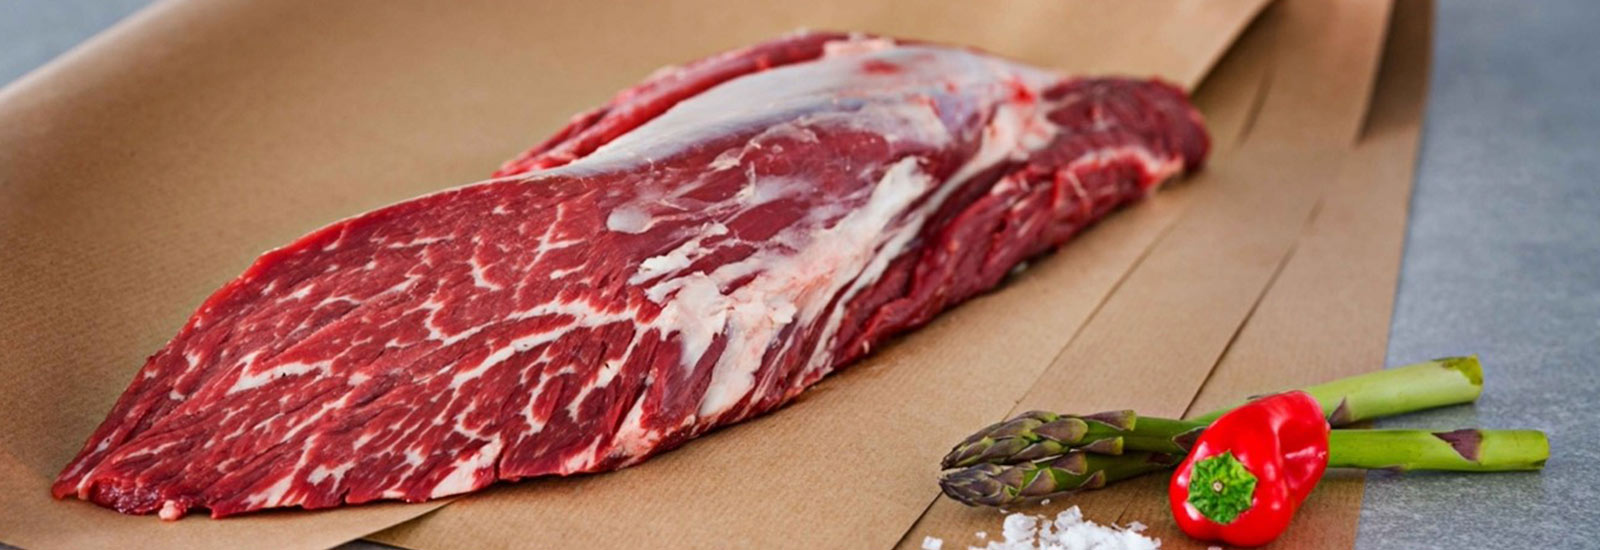 Derrumbando falsos mitos sobre la carne y su sector